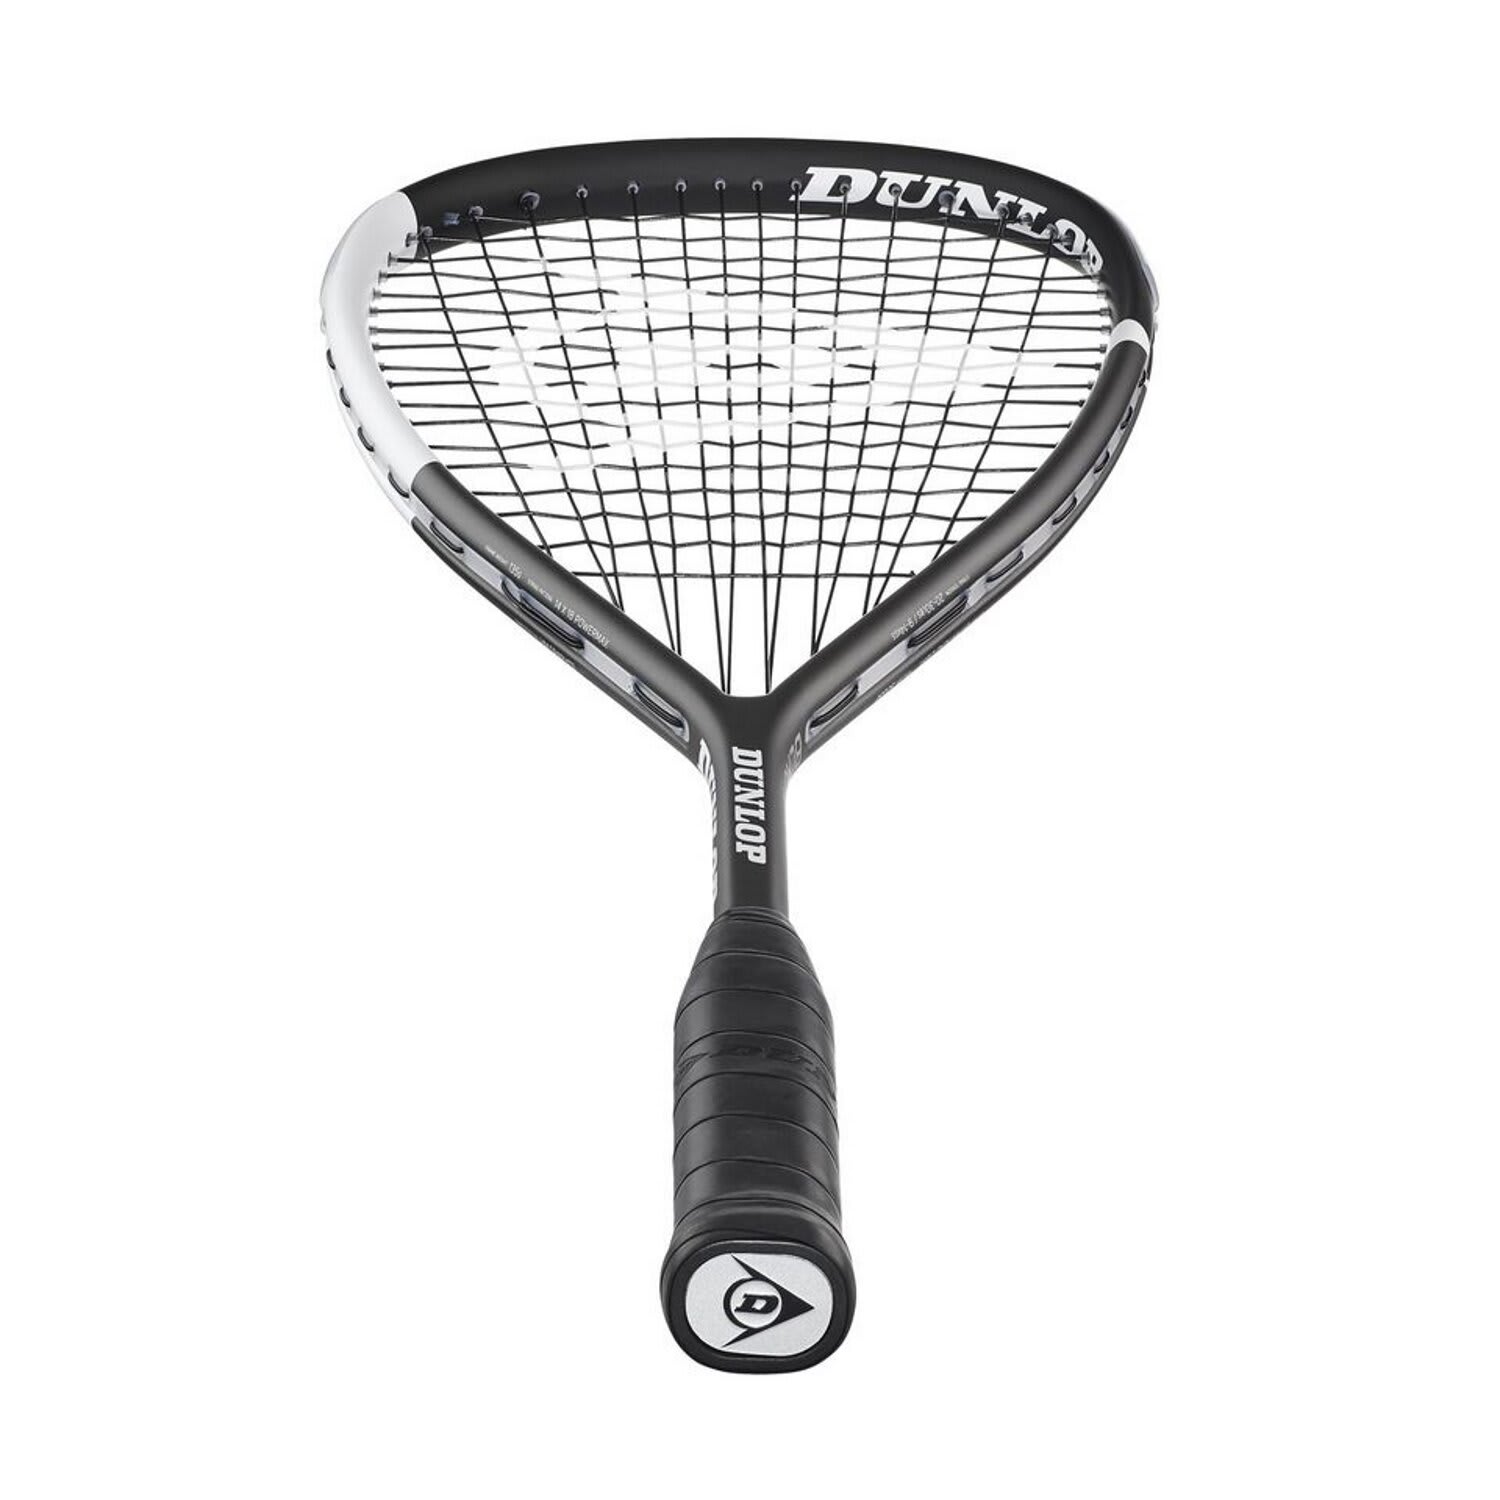 Rond en rond kussen consumptie Dunlop Blackstorm 4D Titanium Squash Racket | Sportsmans Warehouse